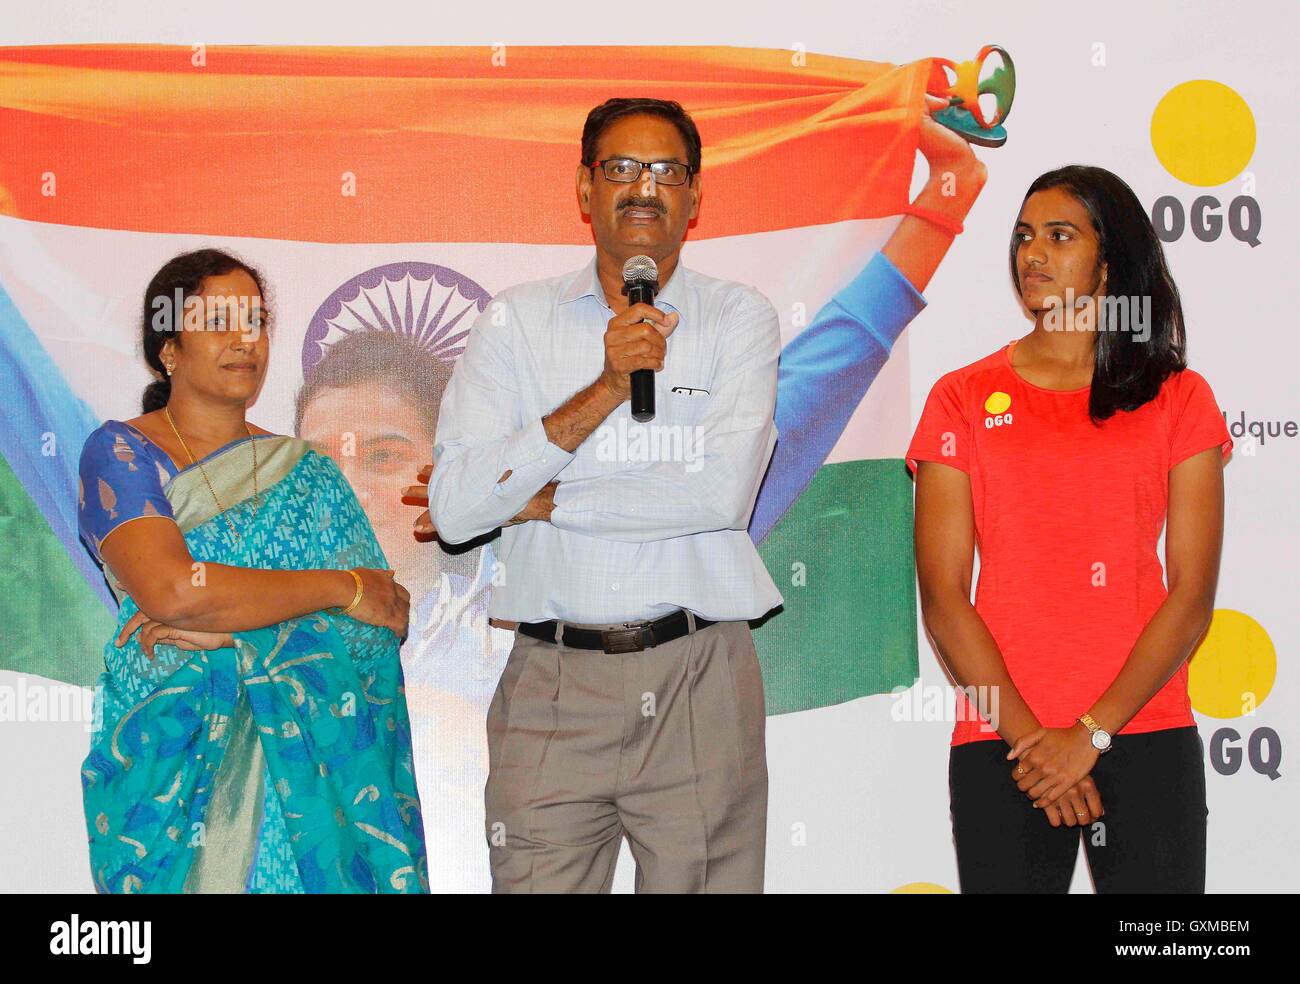 Indische Badminton Spieler Silber Medallist P V Sindhu Eltern PV Ramana und P Vijaya Glückwünsche Funktion organisiert OGQ Mumbai Stockfoto